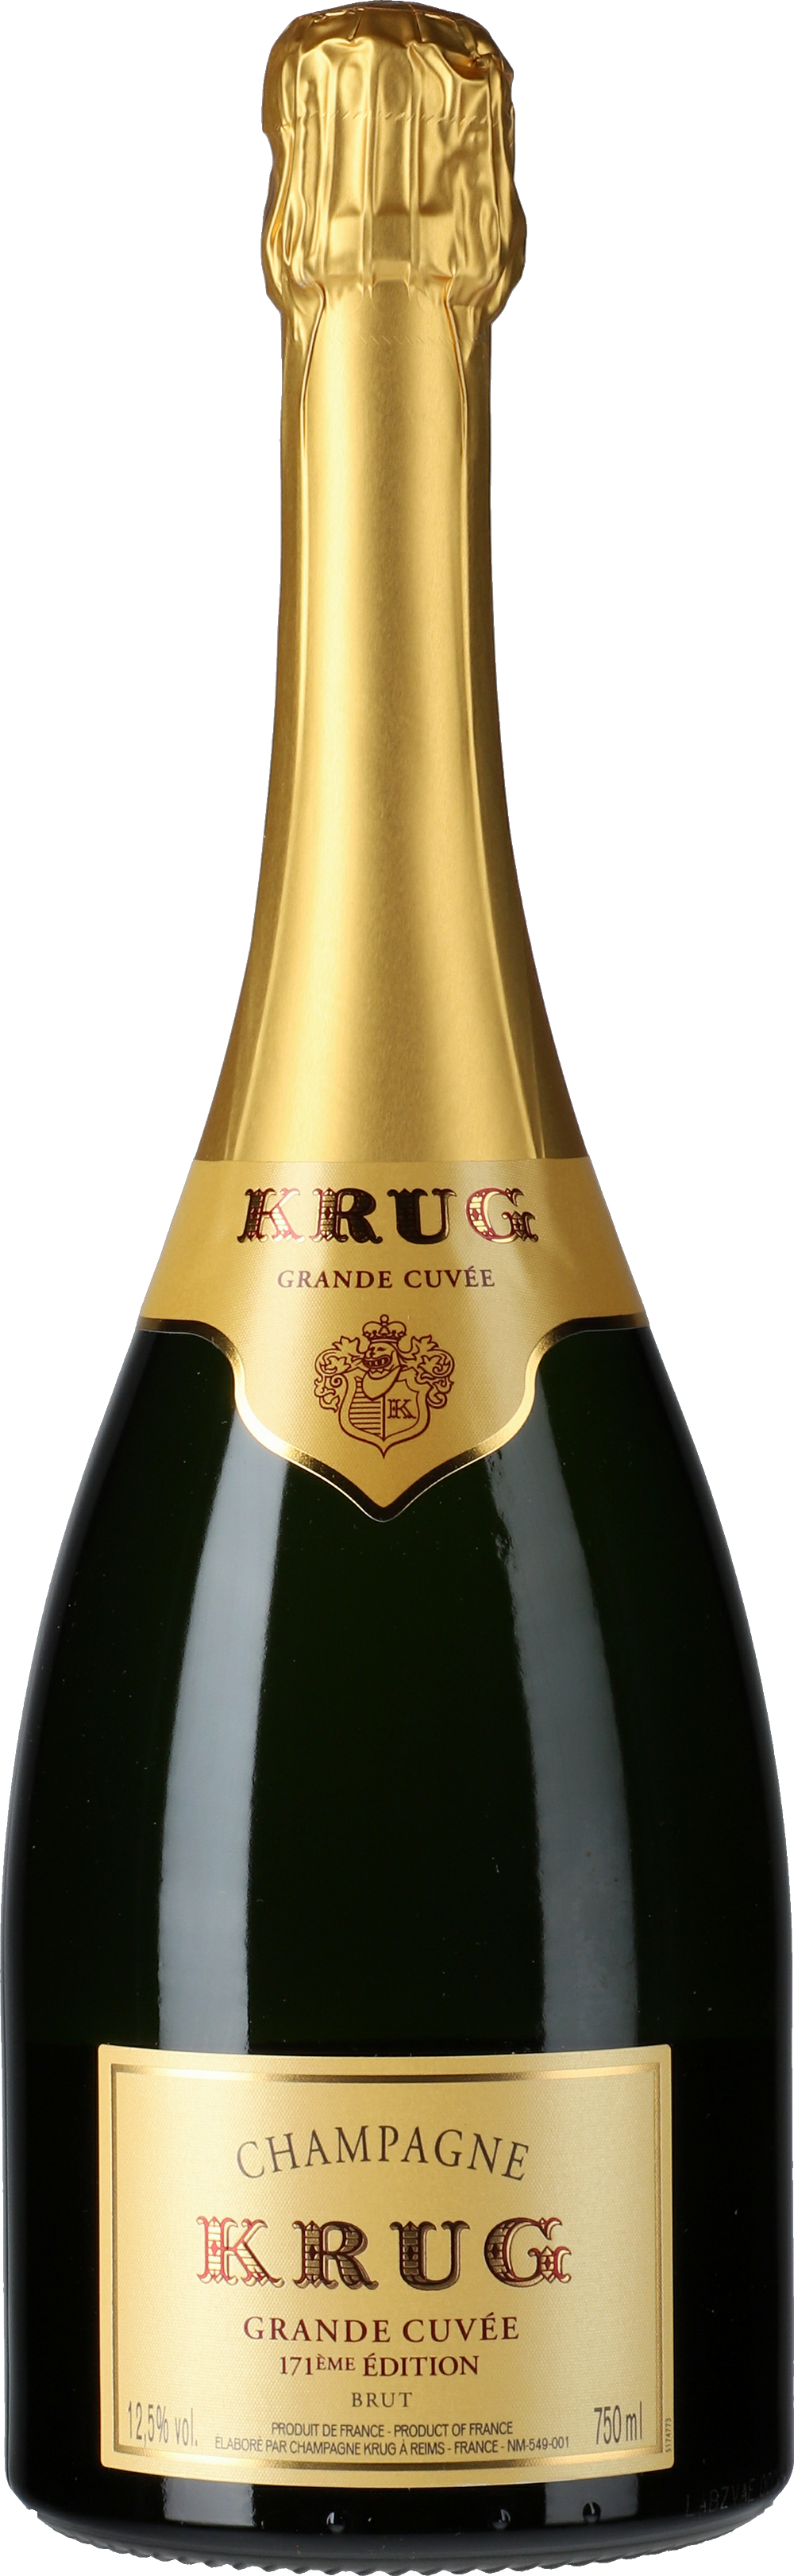 Krug: Champagne Grande Cuvée 171 Édition Brut - Lobenbergs Gute Weine